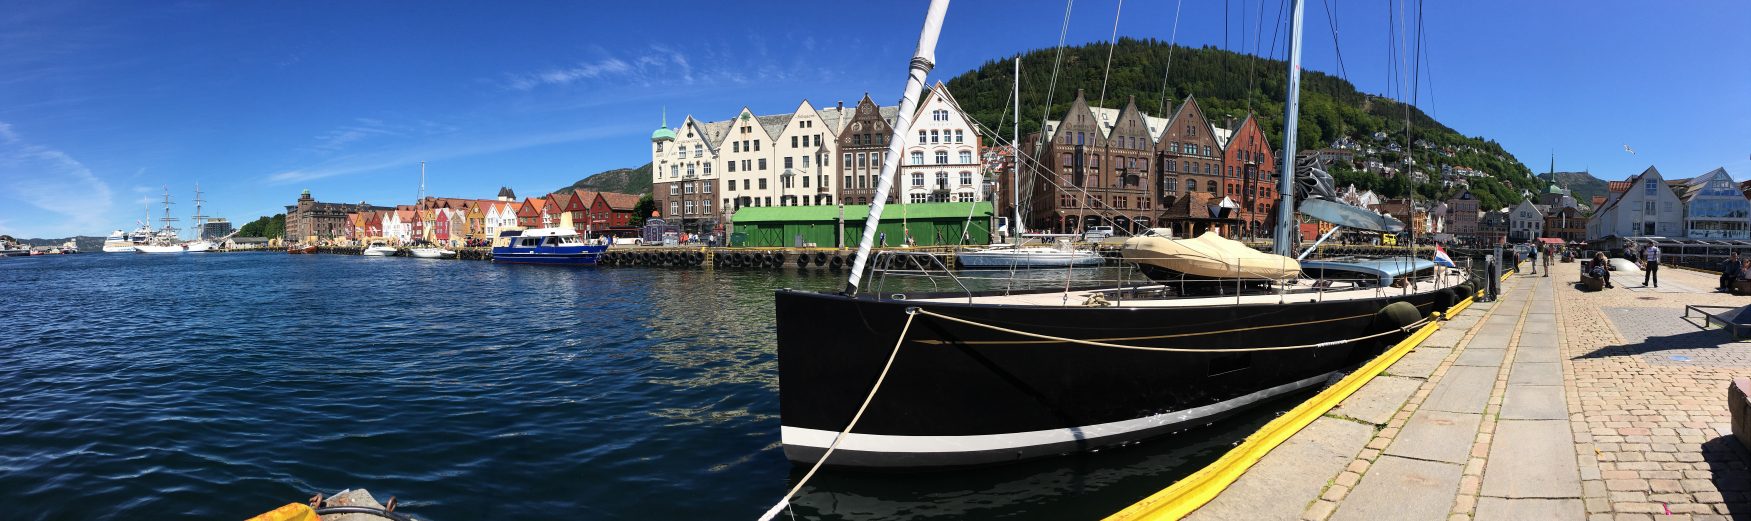 Im Hafen von Bergen Foto: K.Weirauch